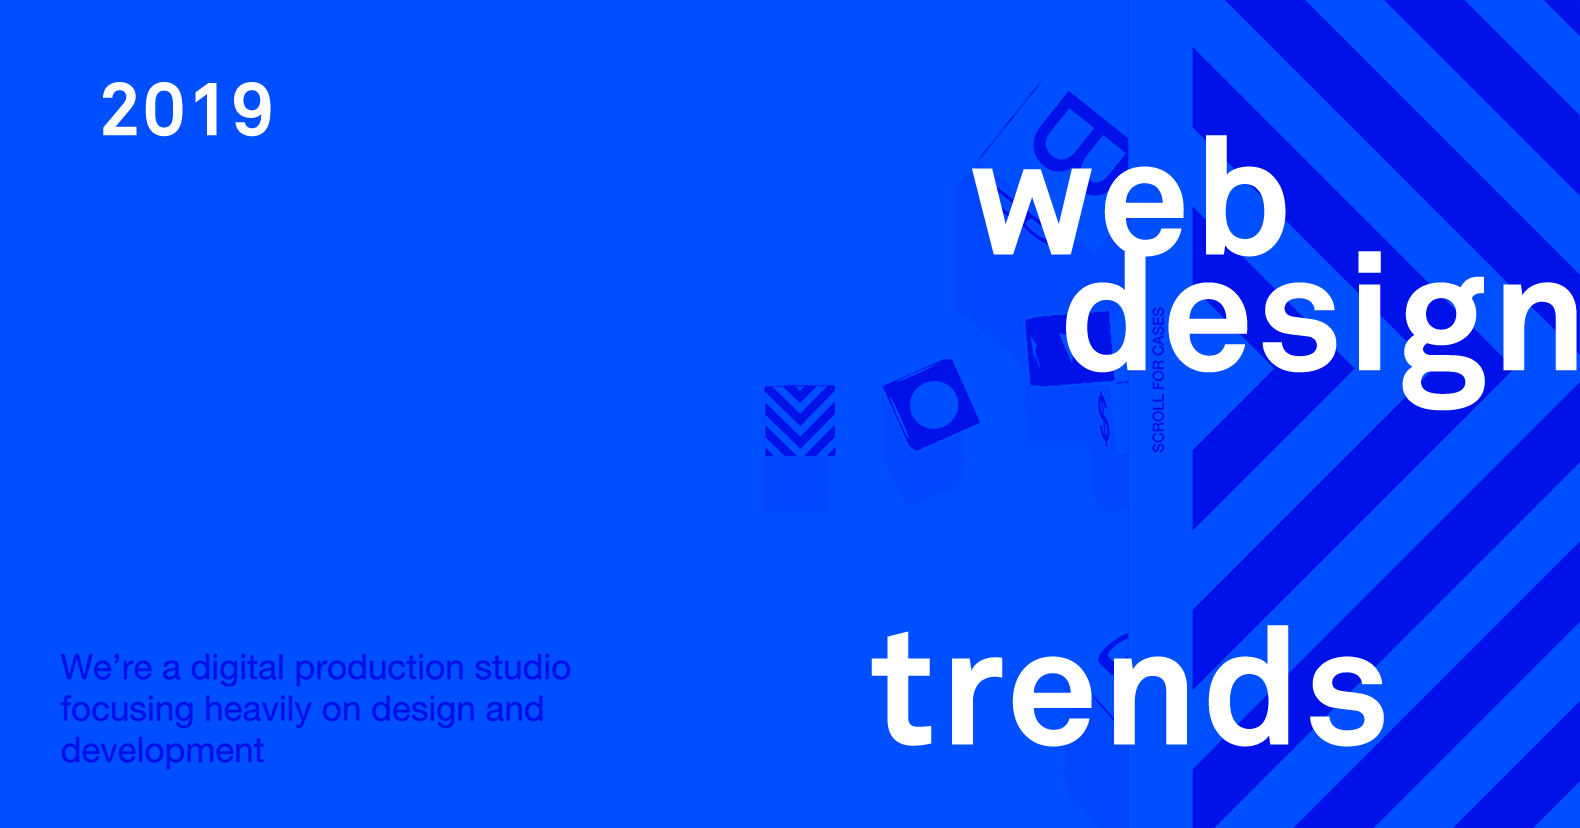 Какие тренды веб-дизайна нас ждут в 2019 году?